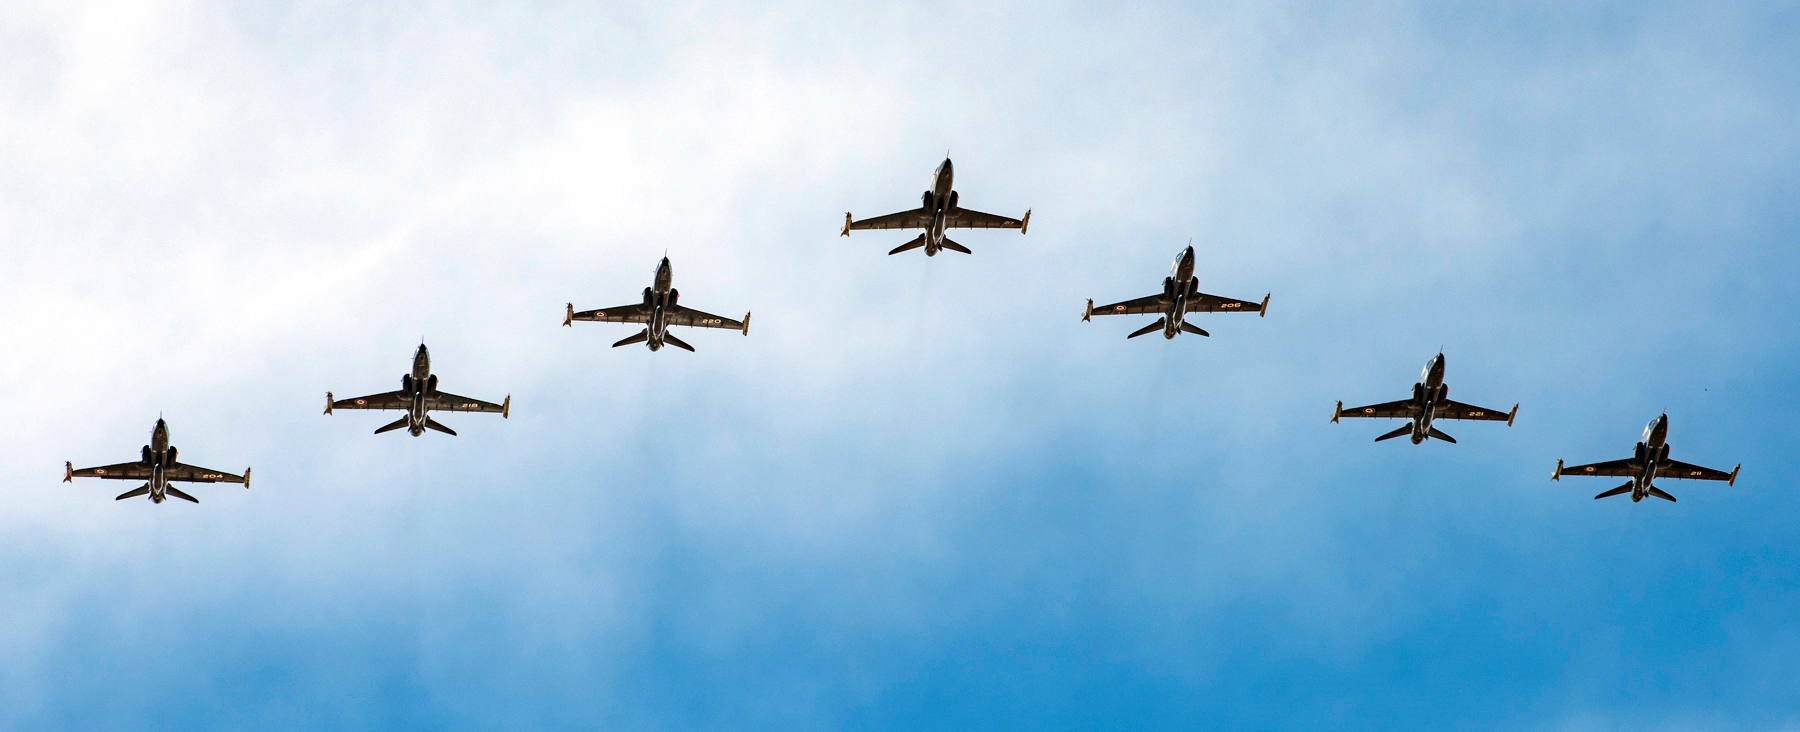 Le 18 novembre 2017, sept CT-155 Hawk de l’Aviation royale canadienne volant en formation arrivent à la Naval Air Facility d’El Centro, en Californie, en vue de participer à l’exercice Antler South. PHOTO : Matelot de 3e classe Erica Seymour, CK02-2017-1043-001